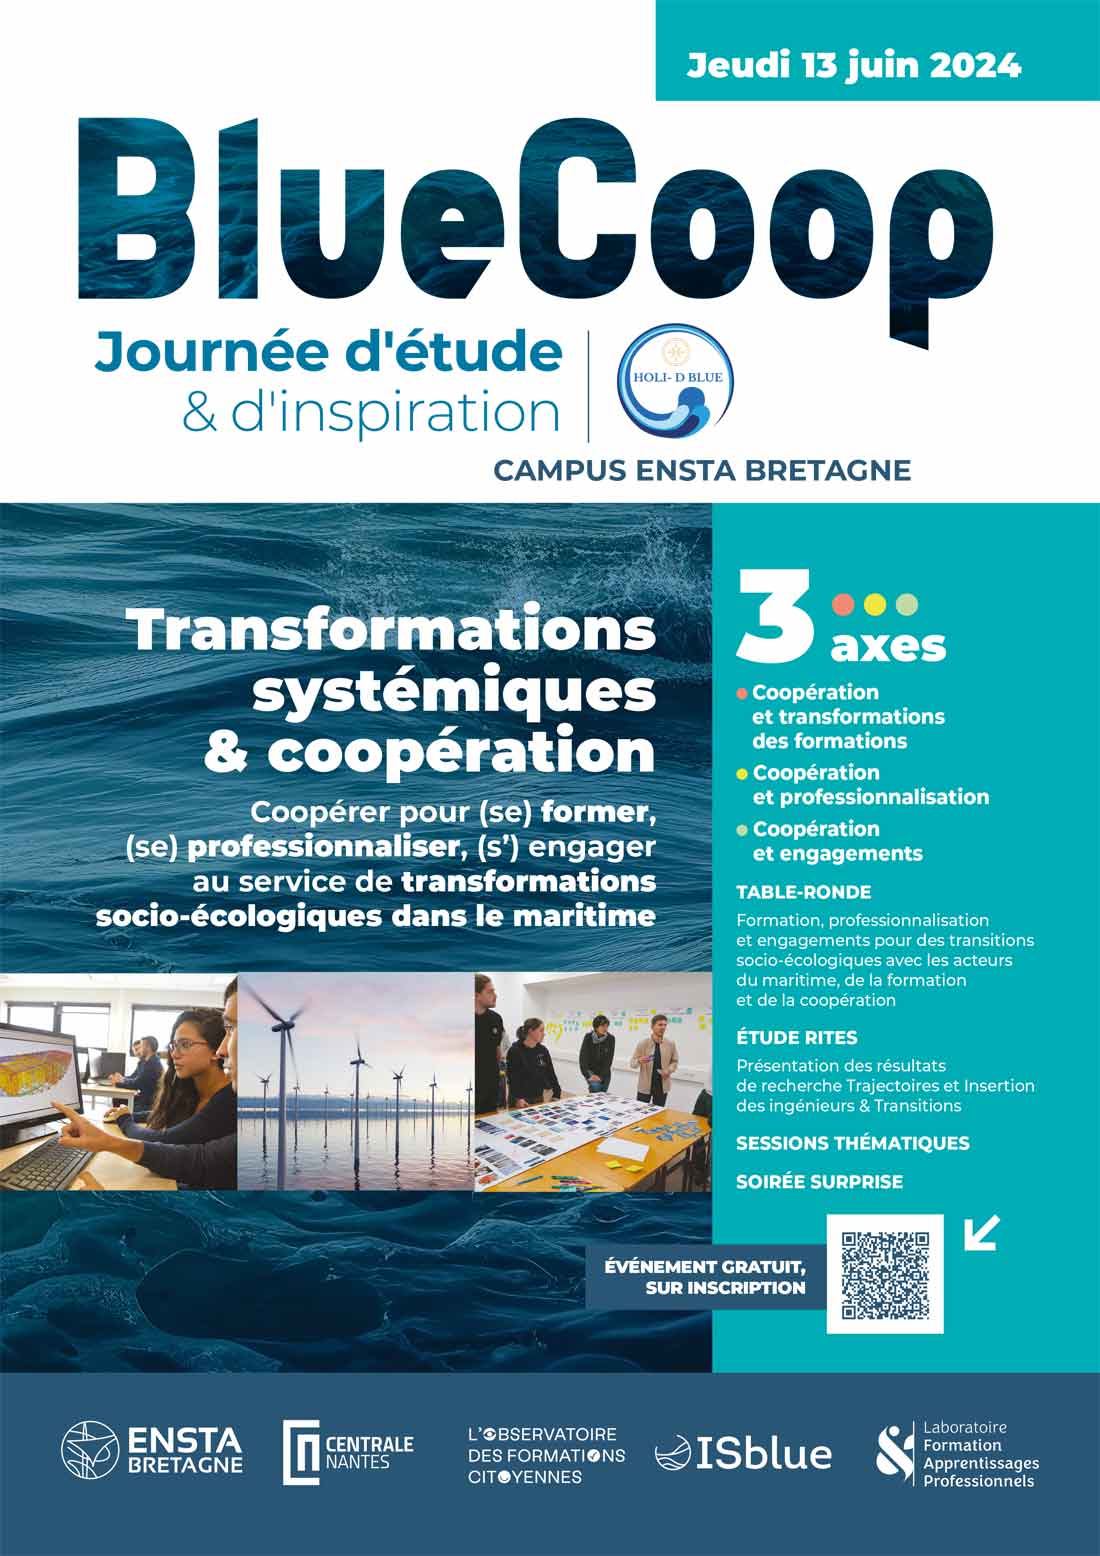 ENSTA Bretagne : 13 juin 2023, journée d'étude et d'inspiration Bluecoop